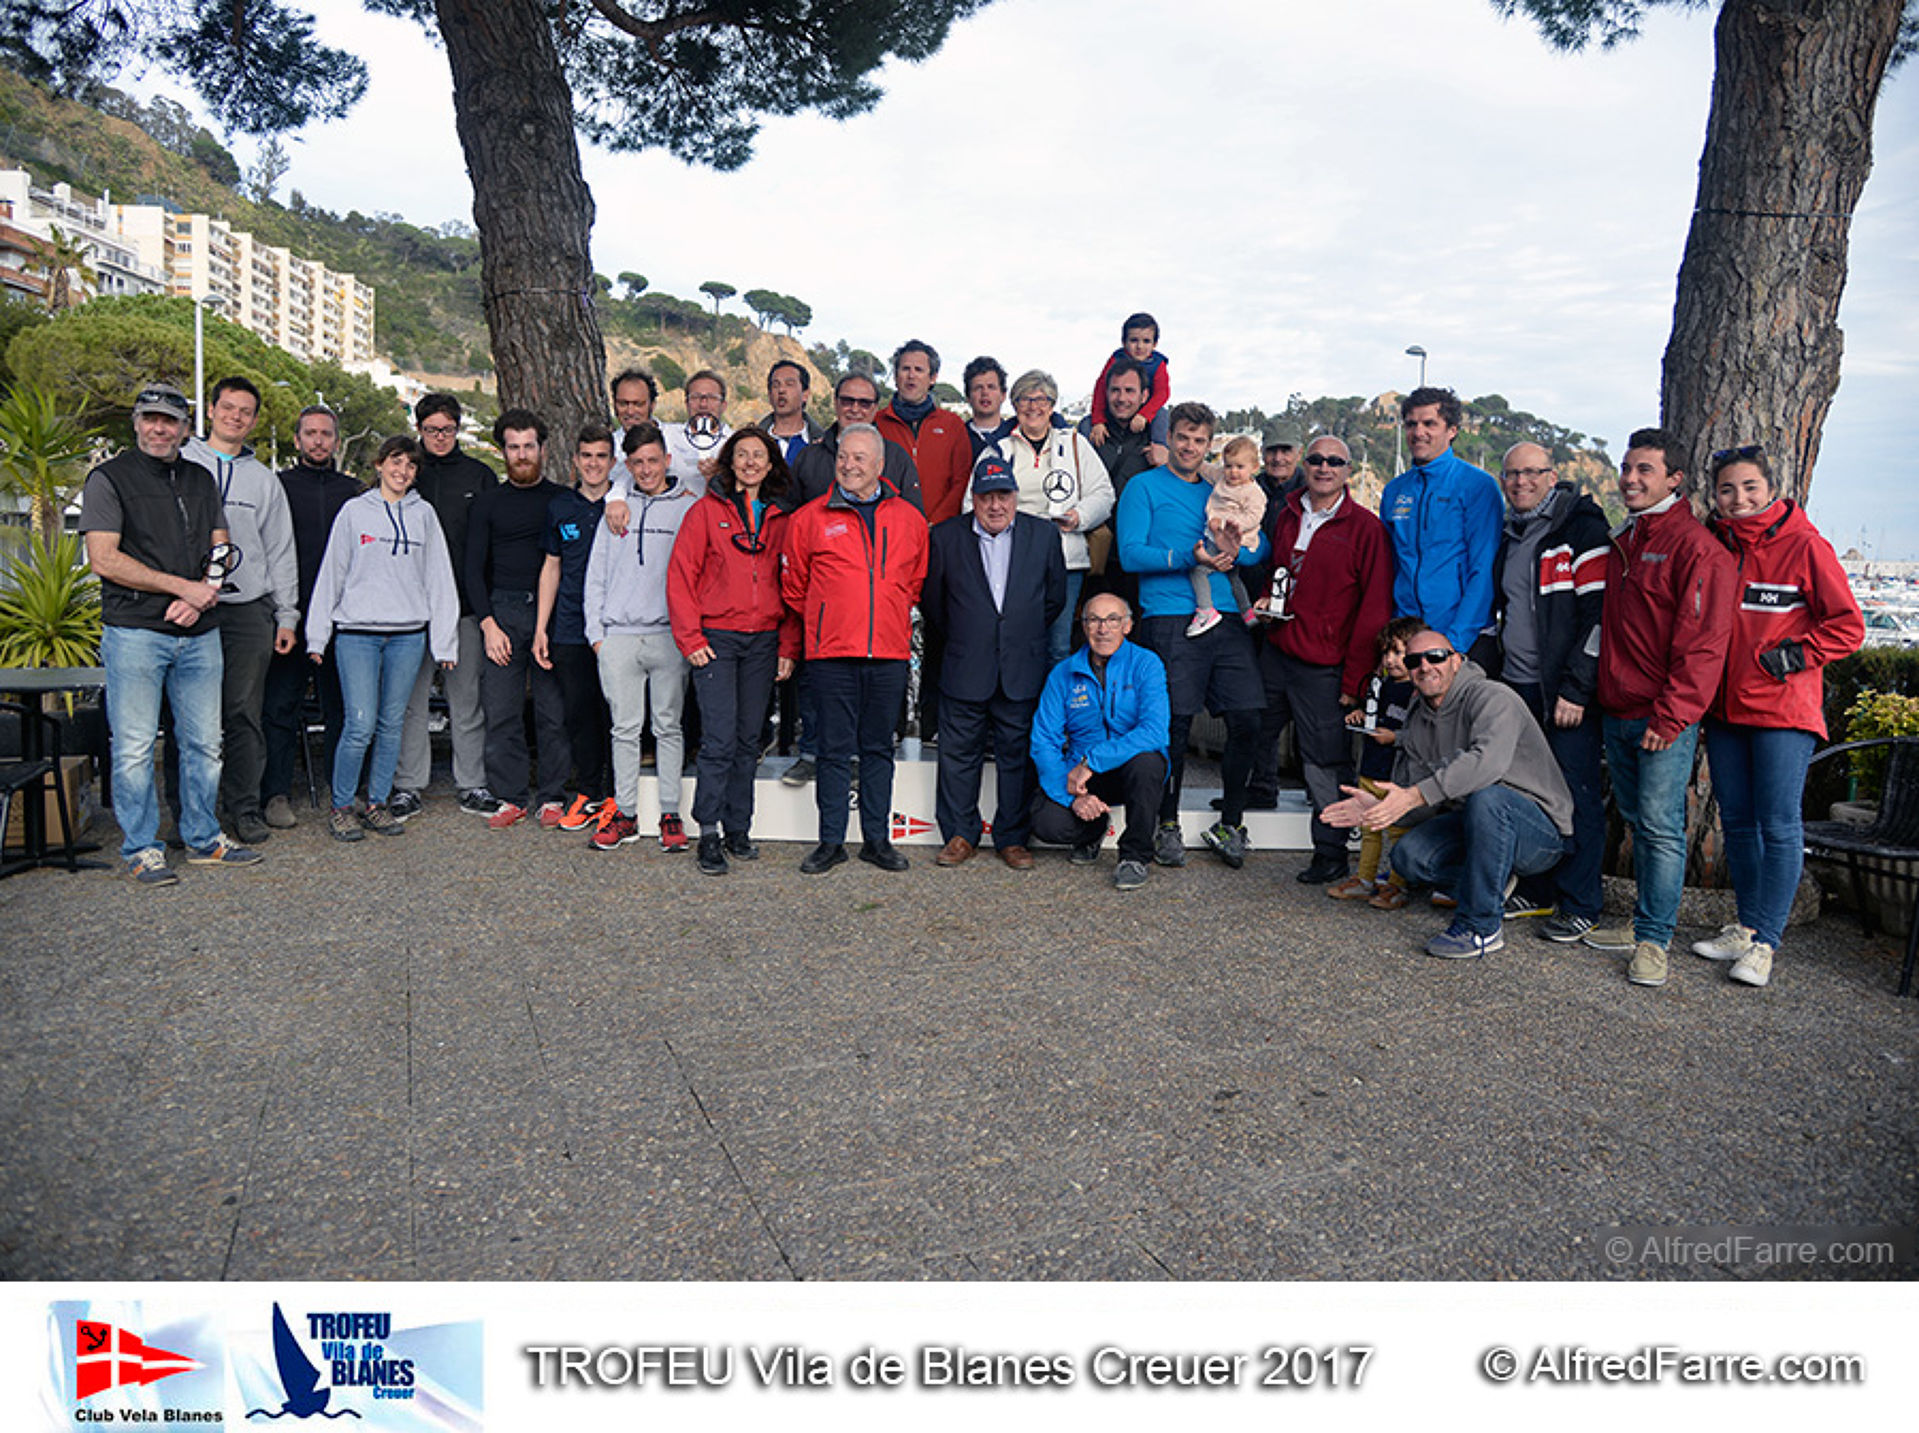 AUDAX, KORRIGAN i VALENTINA guanyadors de l'edició 2017 del Trofeu Vila de Blanes de Creuers ORC.